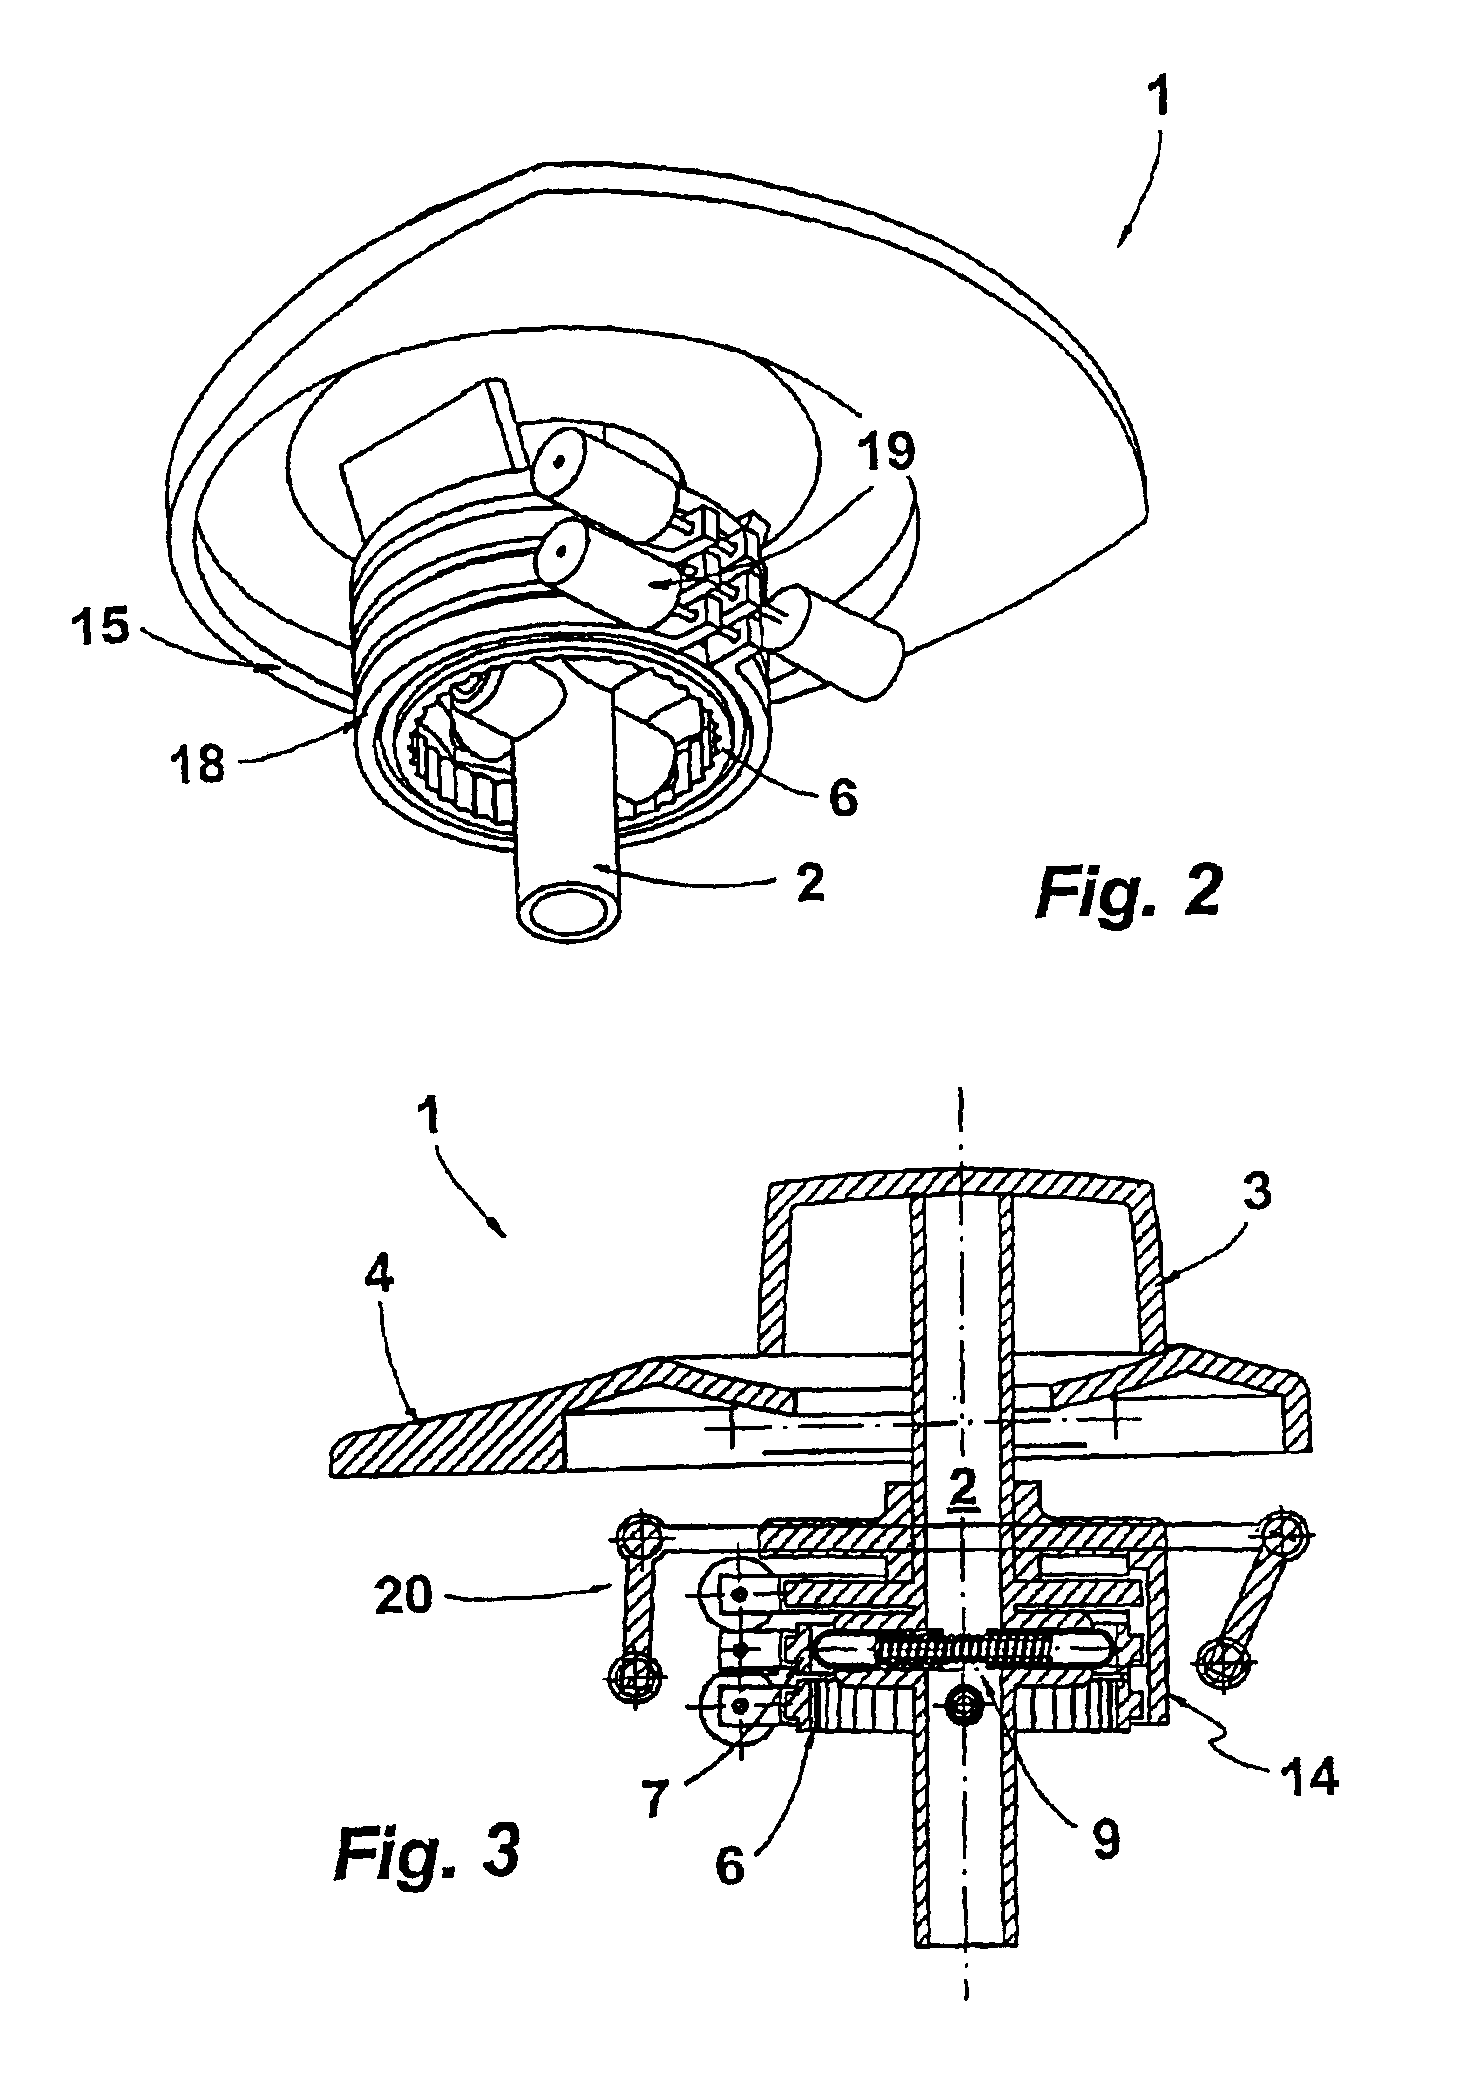 Rotating actuator